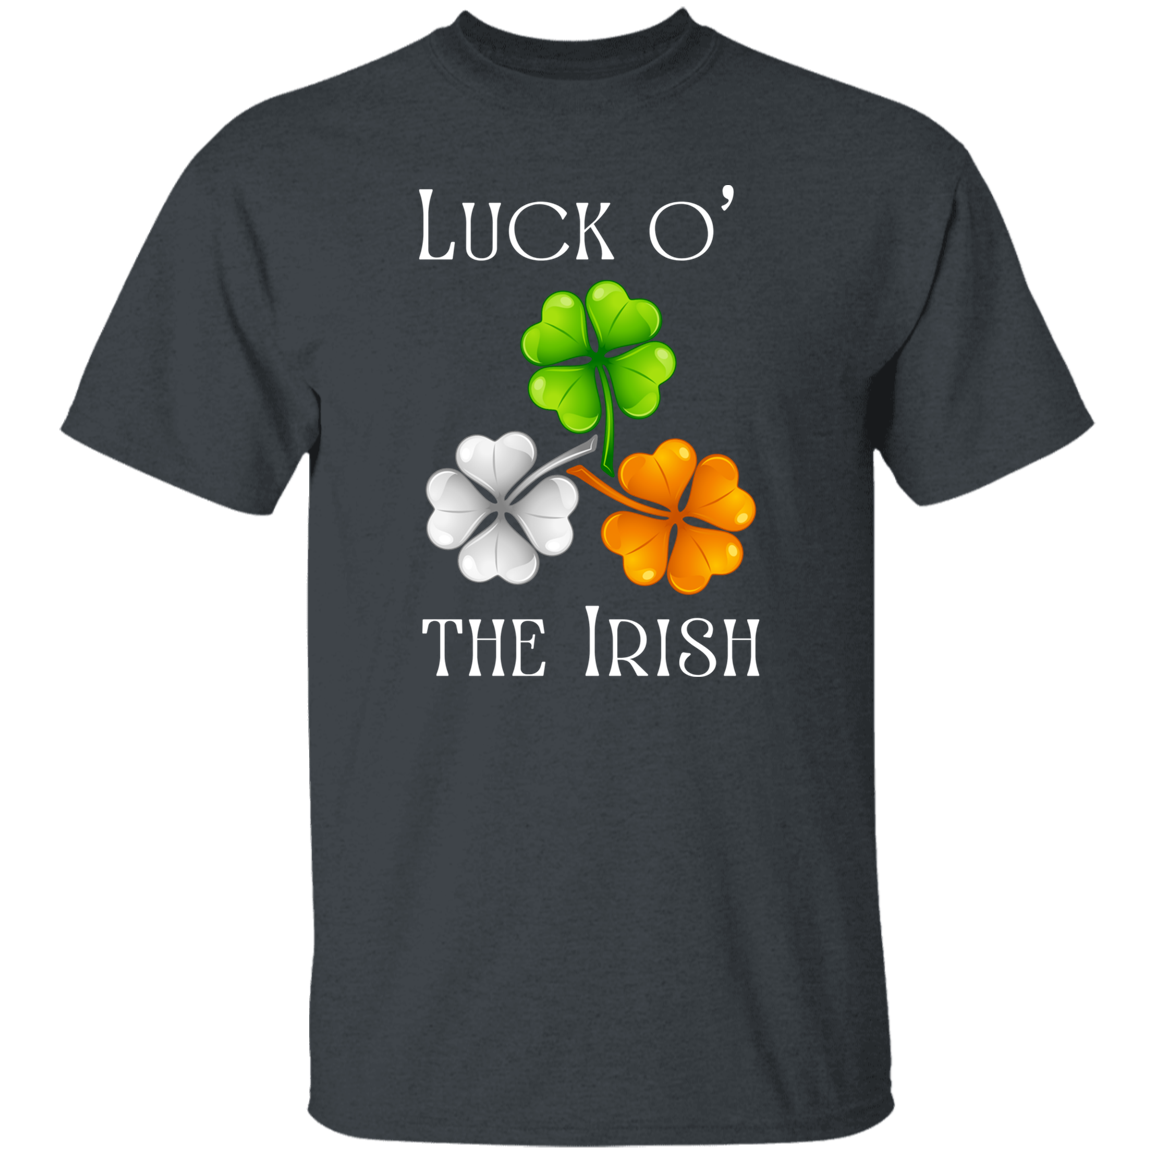 Luck o' the Irish Shamrock T-Shirt